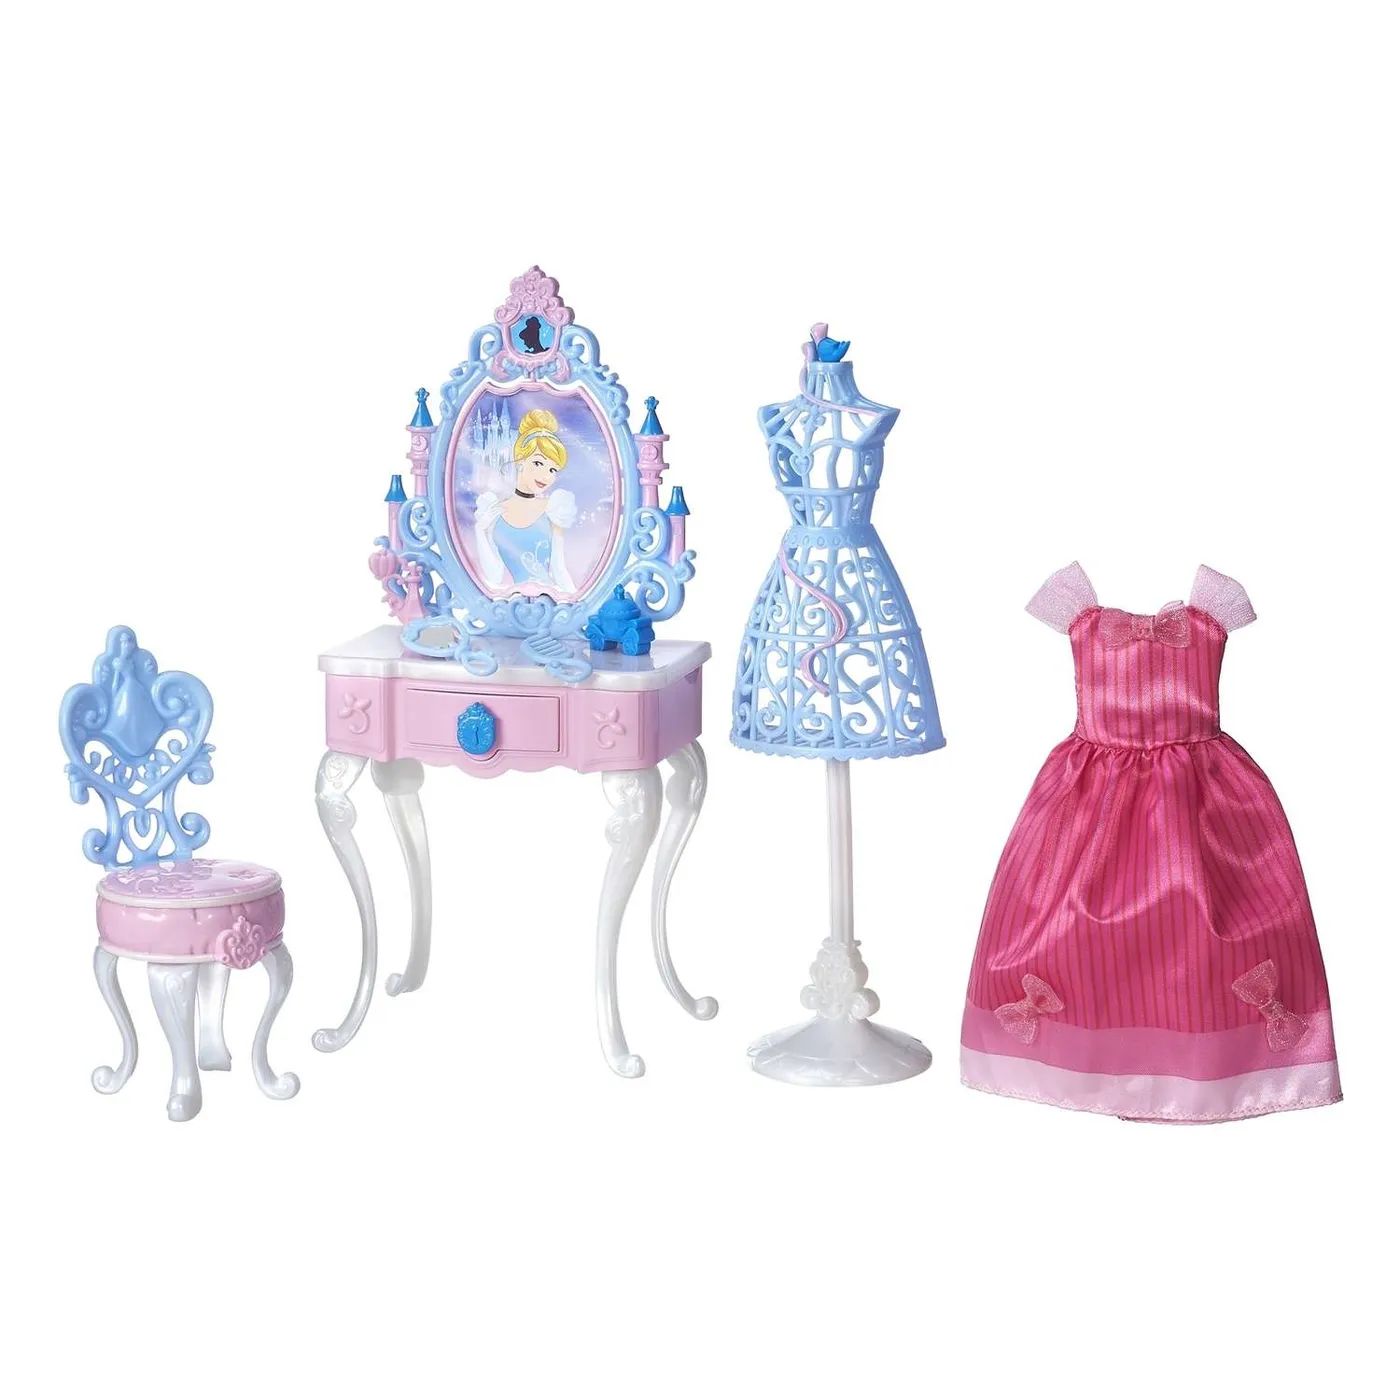 Набор принцесса. Набор принцессы Princess b5310. Набор Hasbro Disney Princess. Туалетный столик Smoby принцессы Диснея. Набор игровой Disney Princess Hasbro Золушка f13865l0.